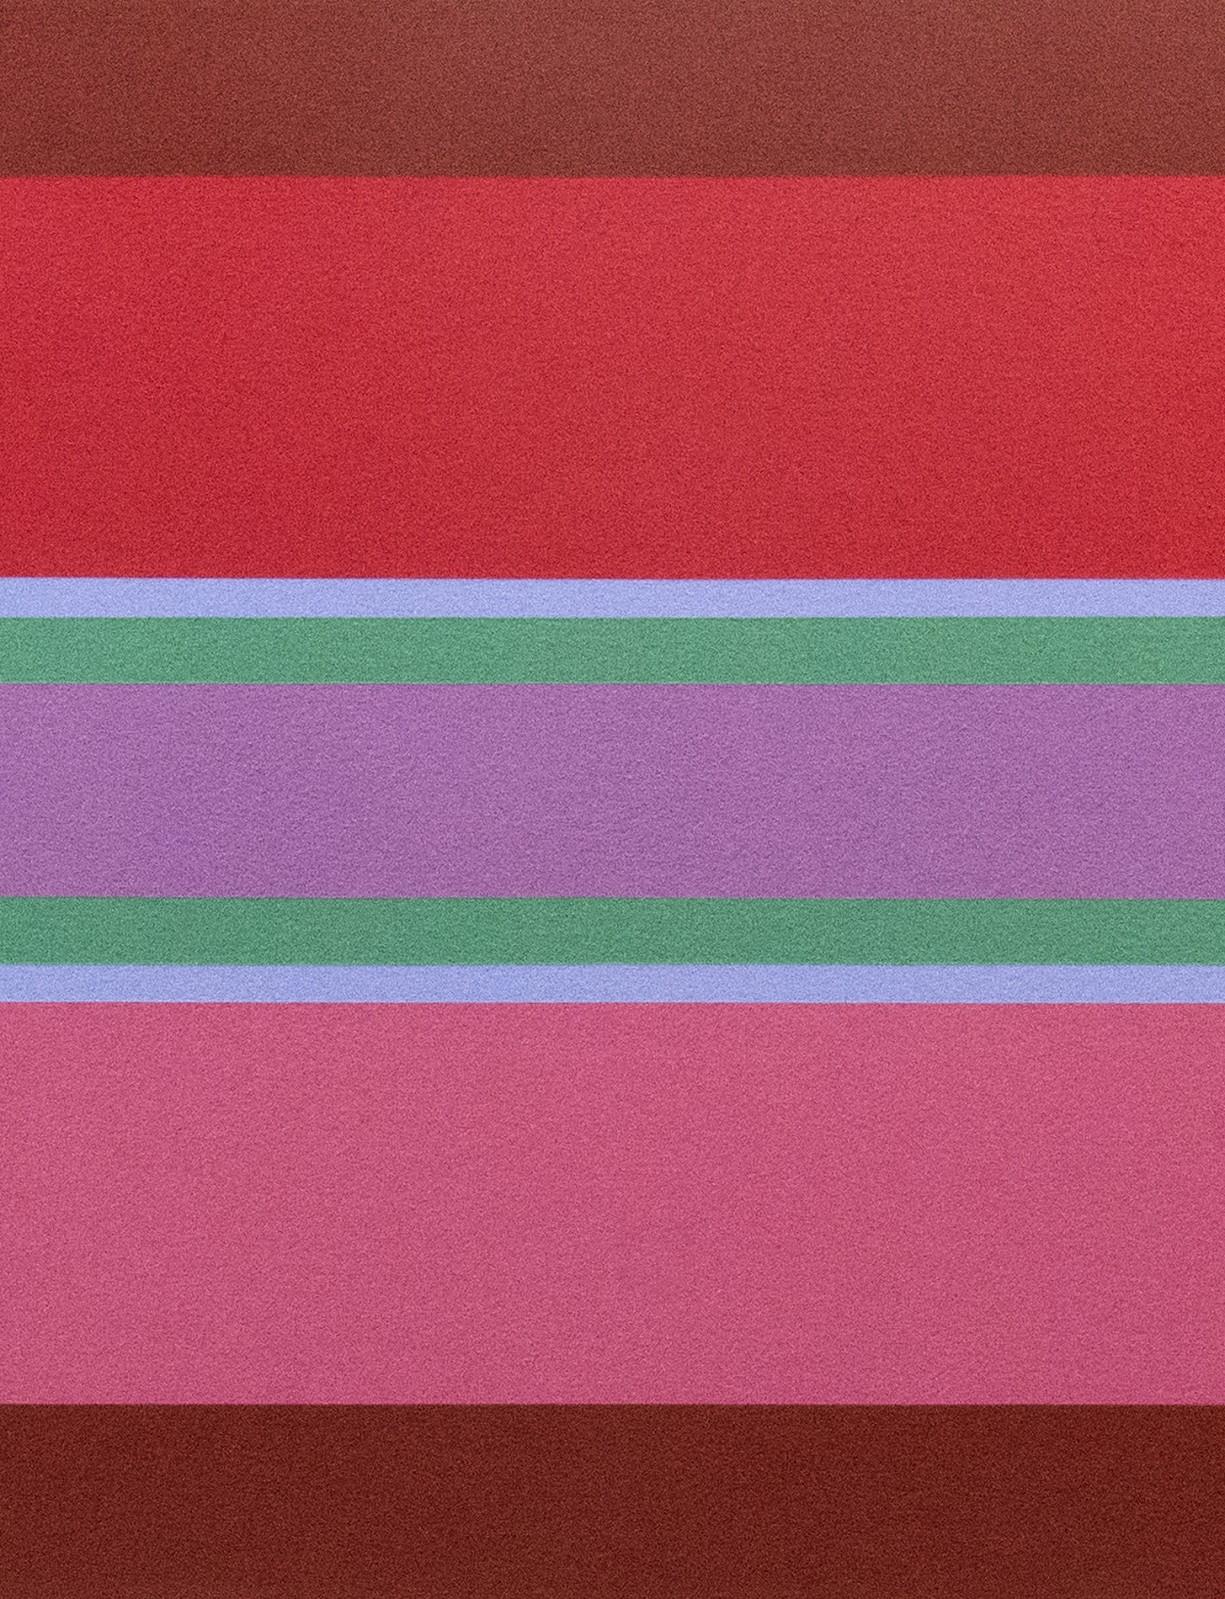 Oasis 4/4 - lebendige, farbenfrohe geometrische Abstraktion, modernist, Acryl auf Leinwand (Rot), Abstract Painting, von Burton Kramer